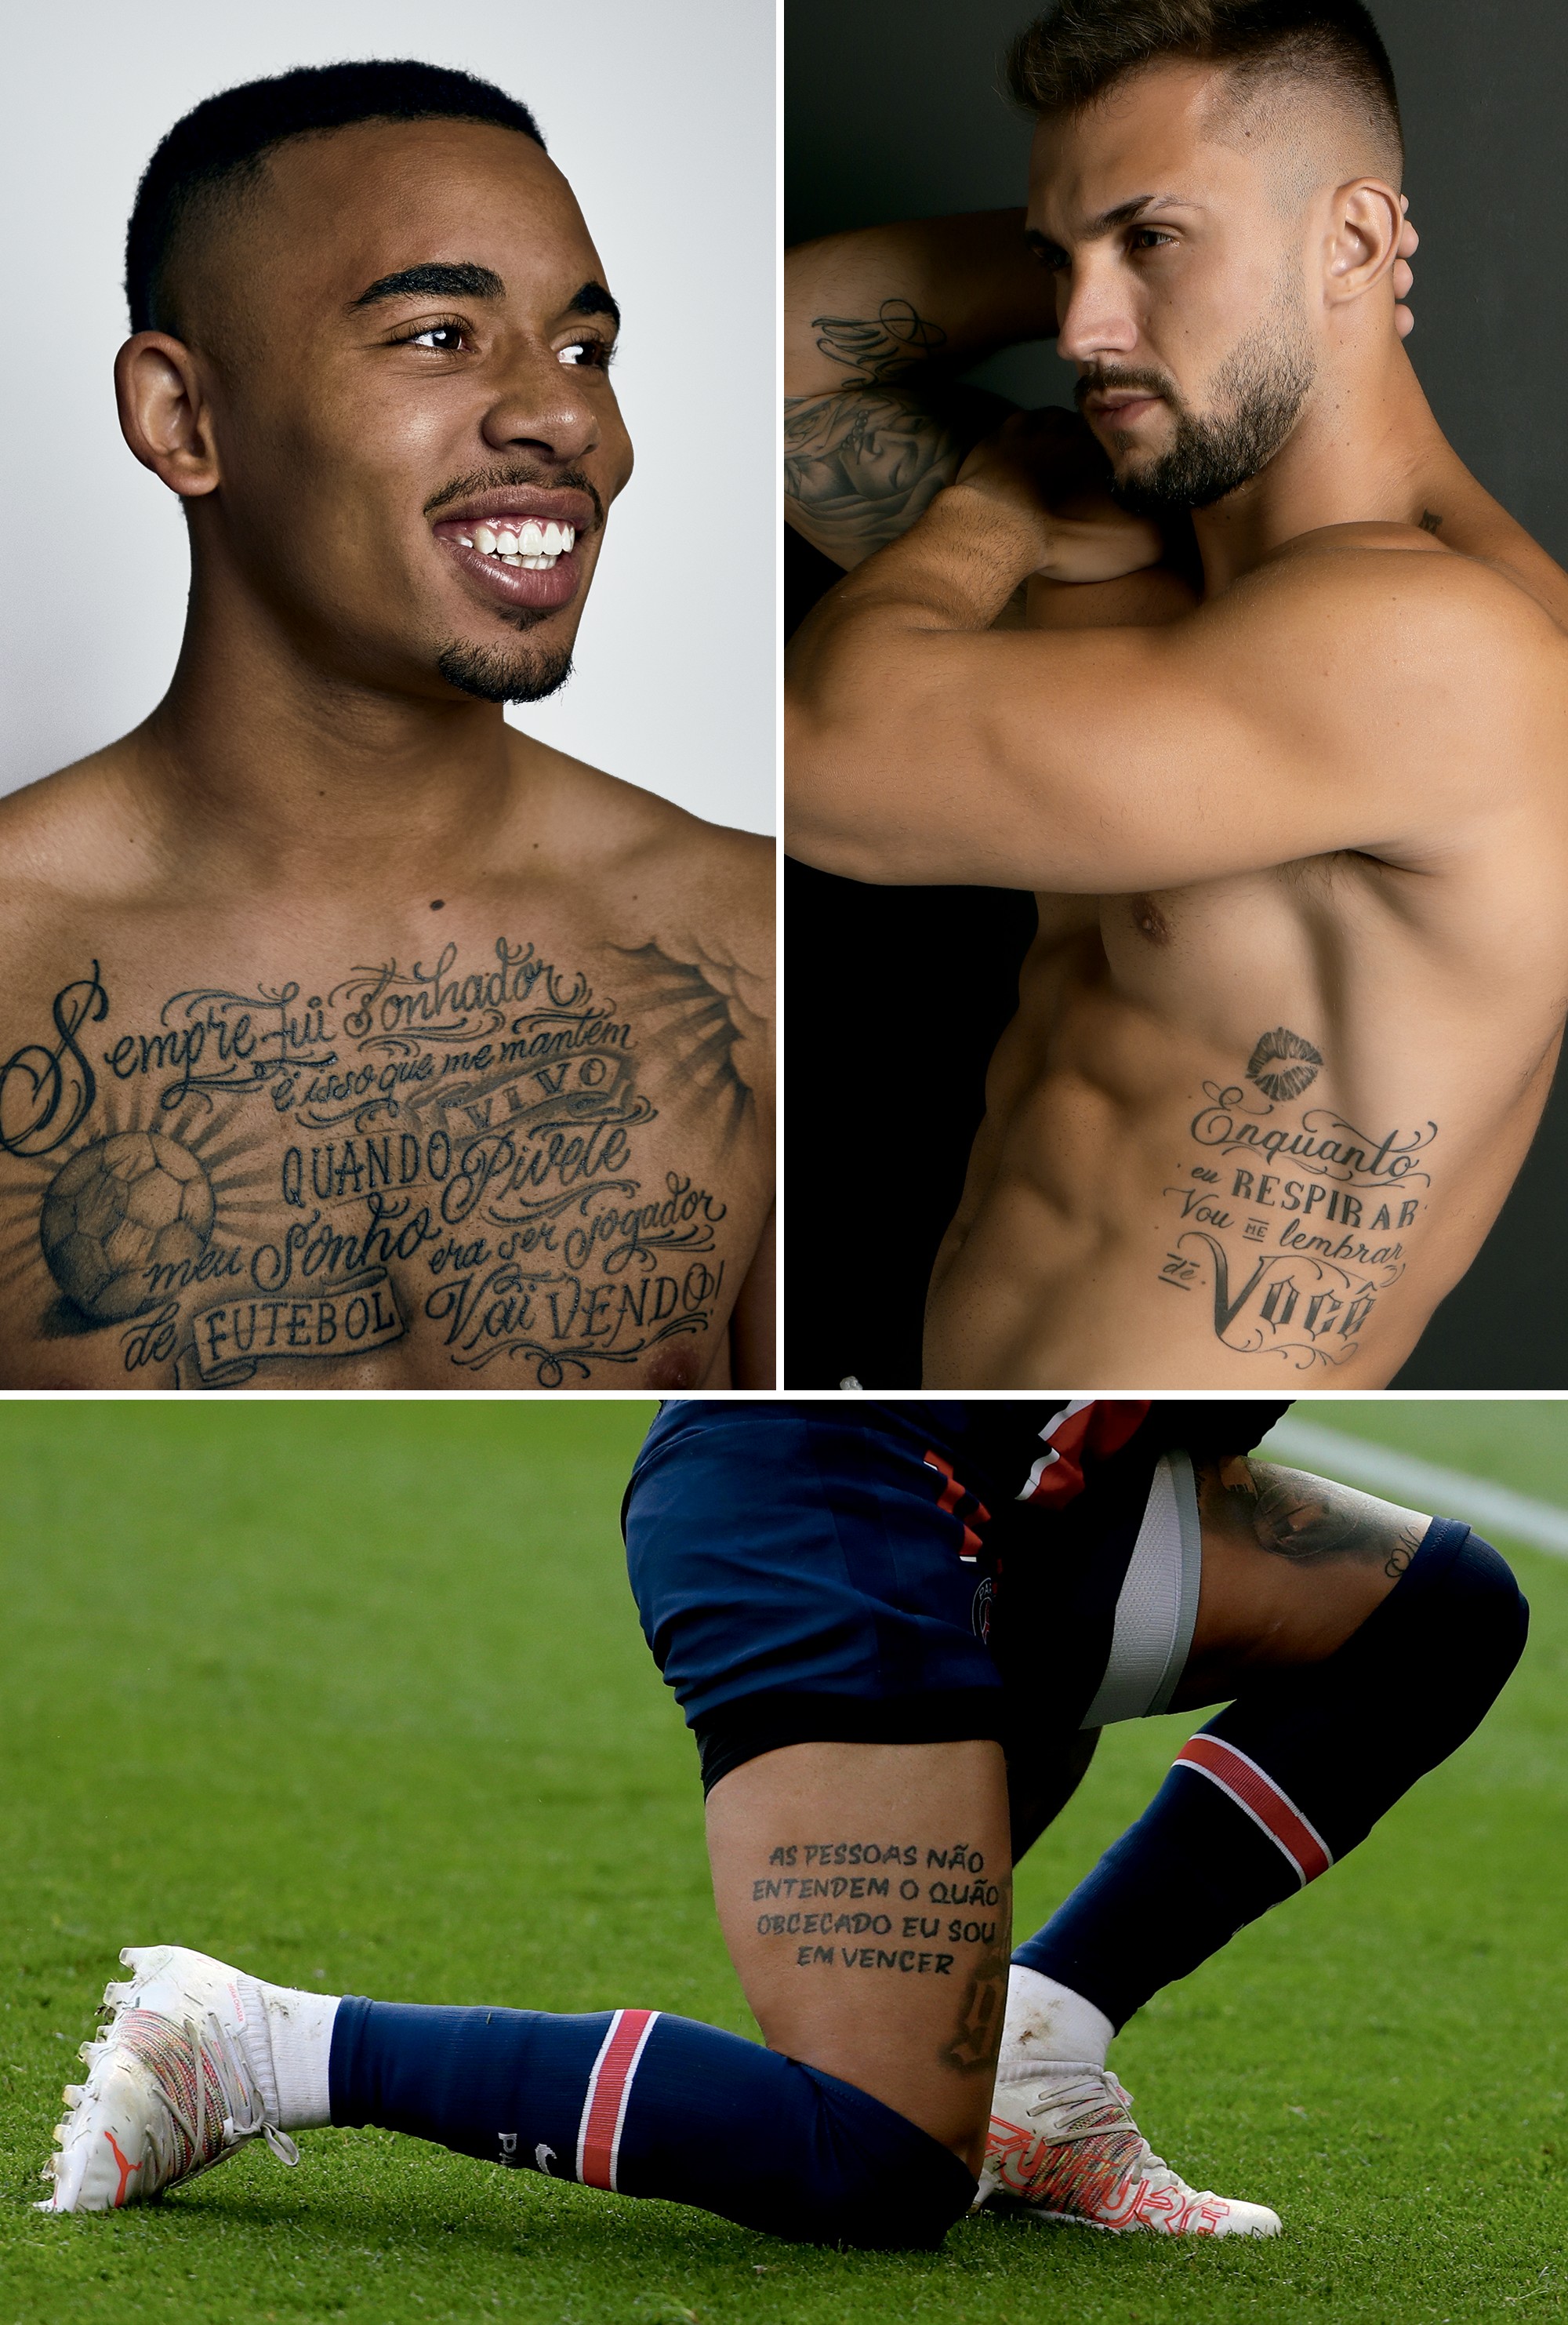 Alerta de textão: Em sentido horário: Gabriel Jesus, Arthur Picoli e Neymar estão entre os famosos que eternizaram textões na pele (Foto: divulgação/Getty images)